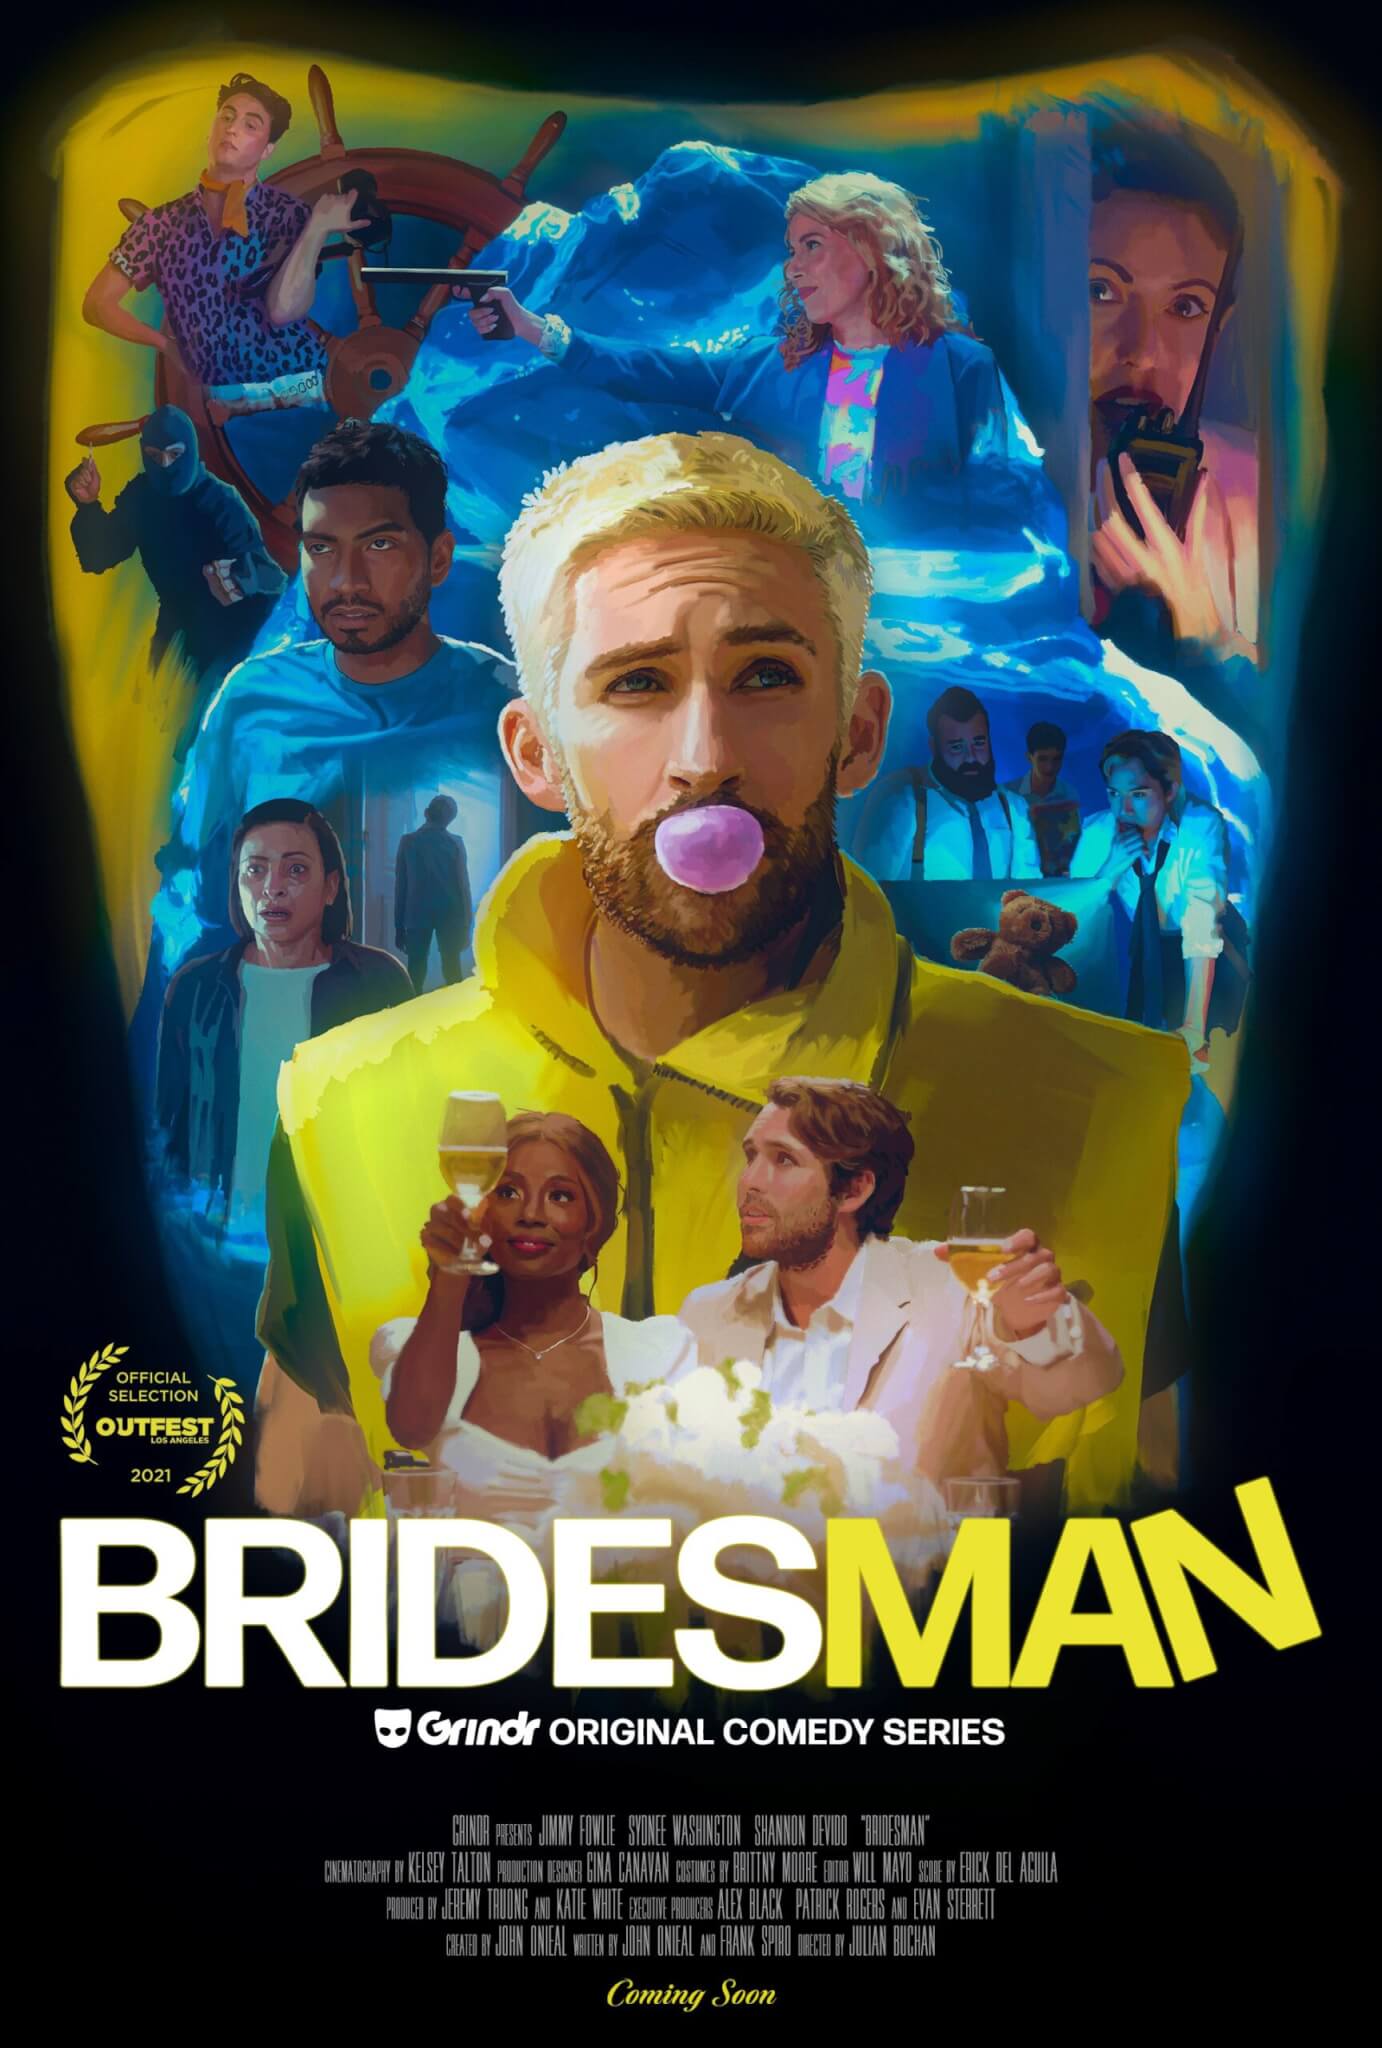 Bridesman, da oggi su app la prima serie originale Grindr - il trailer - Bridesman scaled - Gay.it